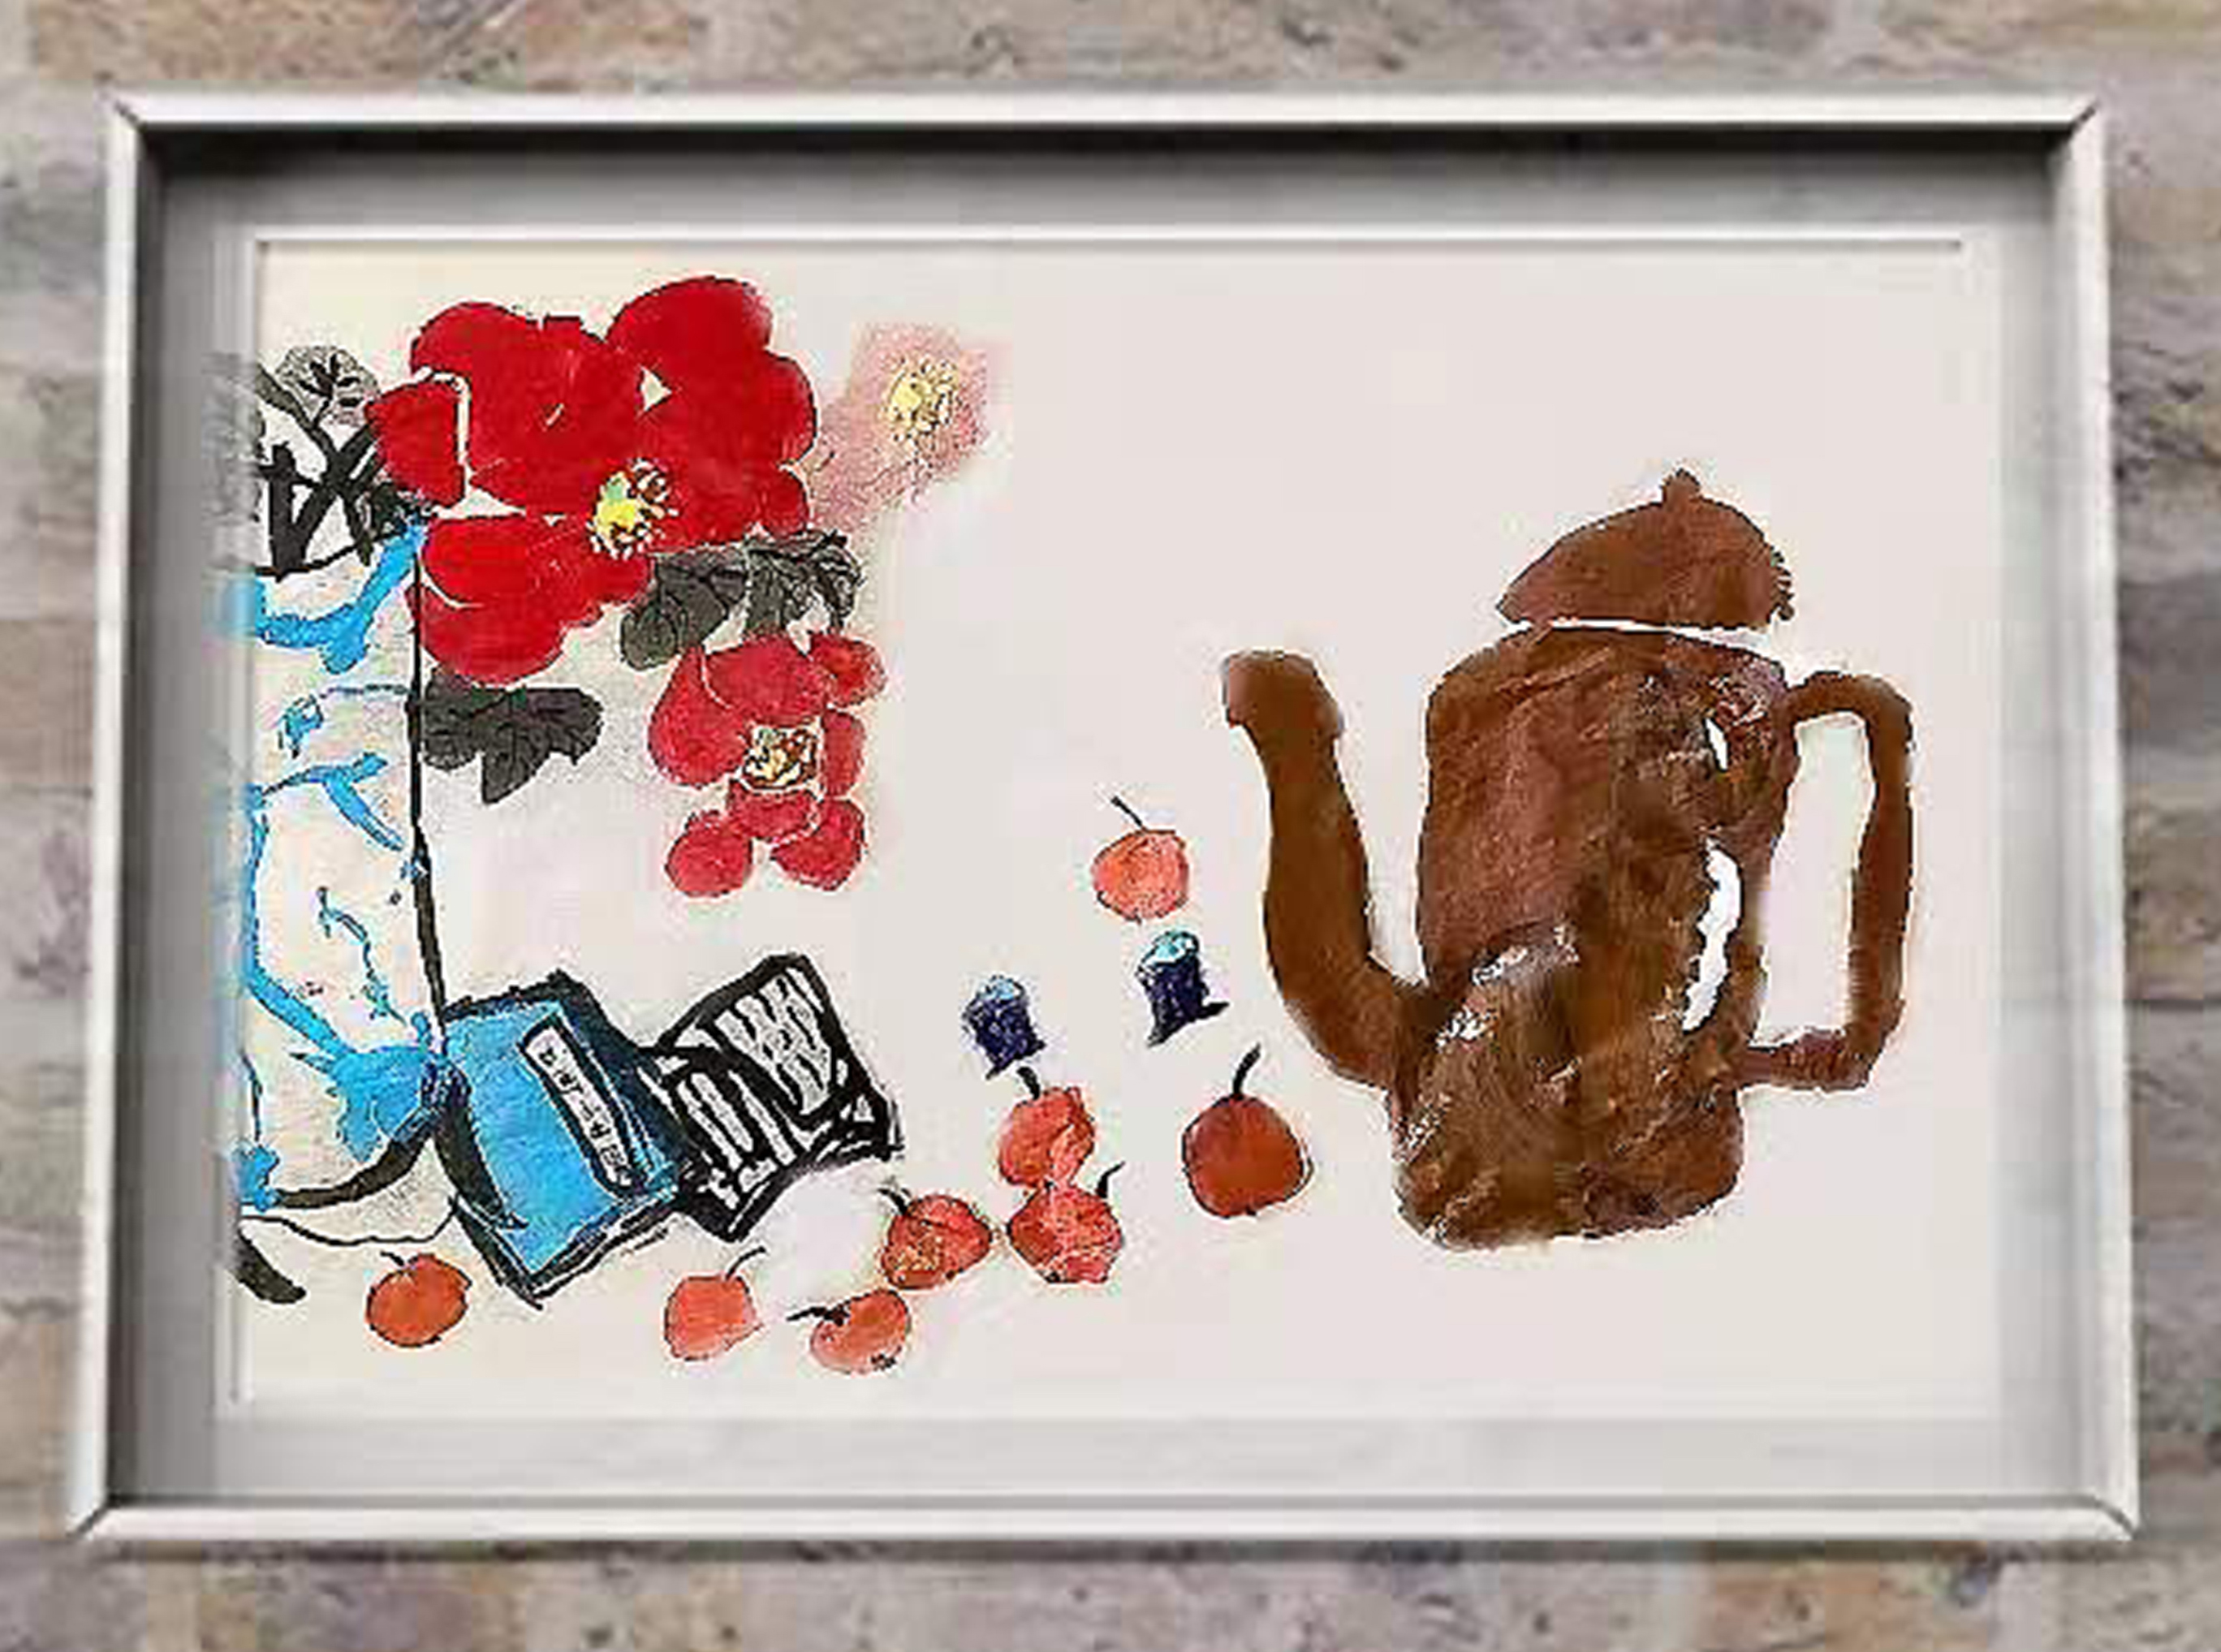 王煜婷  8岁，初学，线上国画初级课课堂作品 Wang Yuting 8 ans , débutant, peinture chinoise réalisée dans le cours en ligne